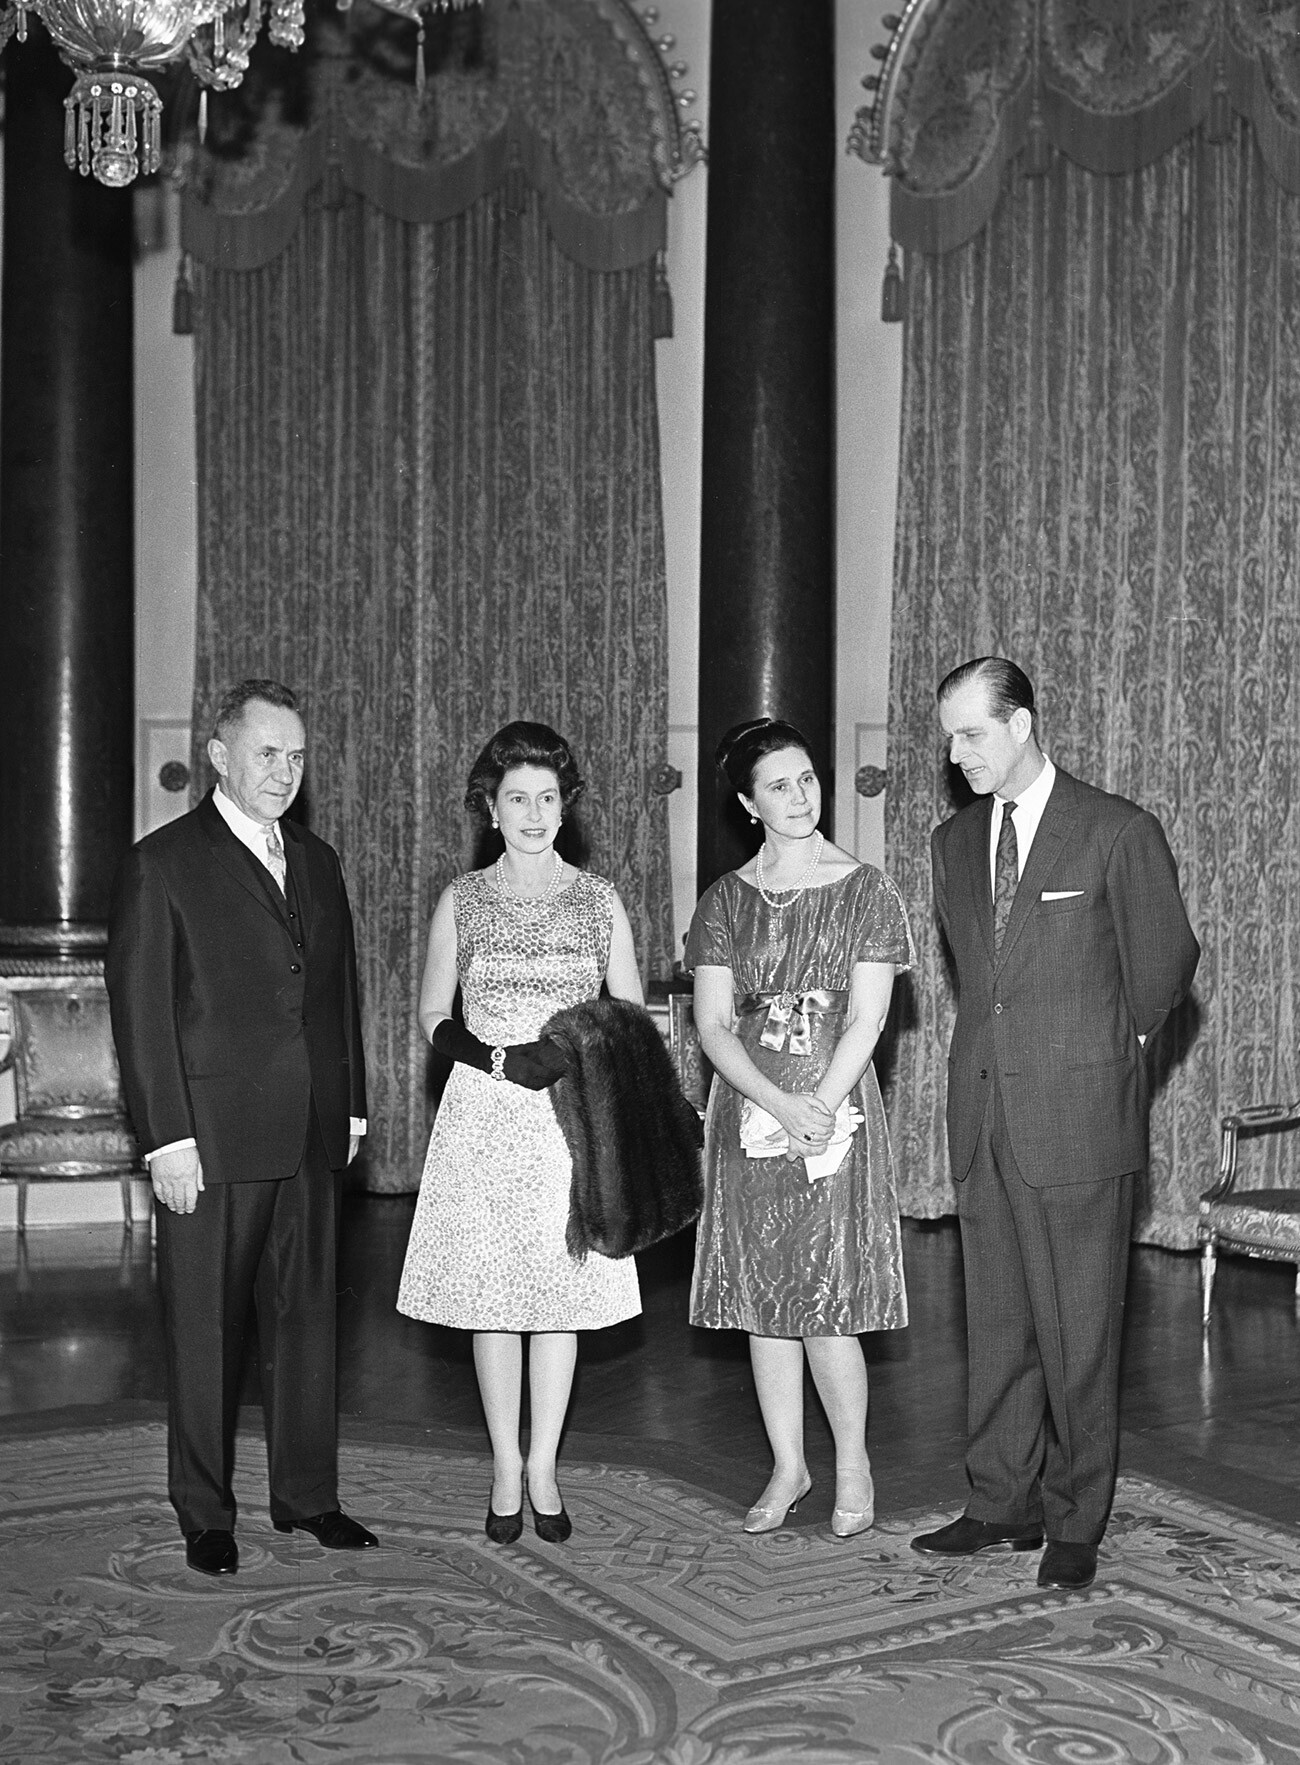 Predsednik Sveta ministrov ZSSR Aleksej Kosigin (levo) s soprogo (2. desno) se je med obiskom v Veliki Britaniji srečal s kraljico Elizabeto II. (2. levo) in princem Filipom (desno)